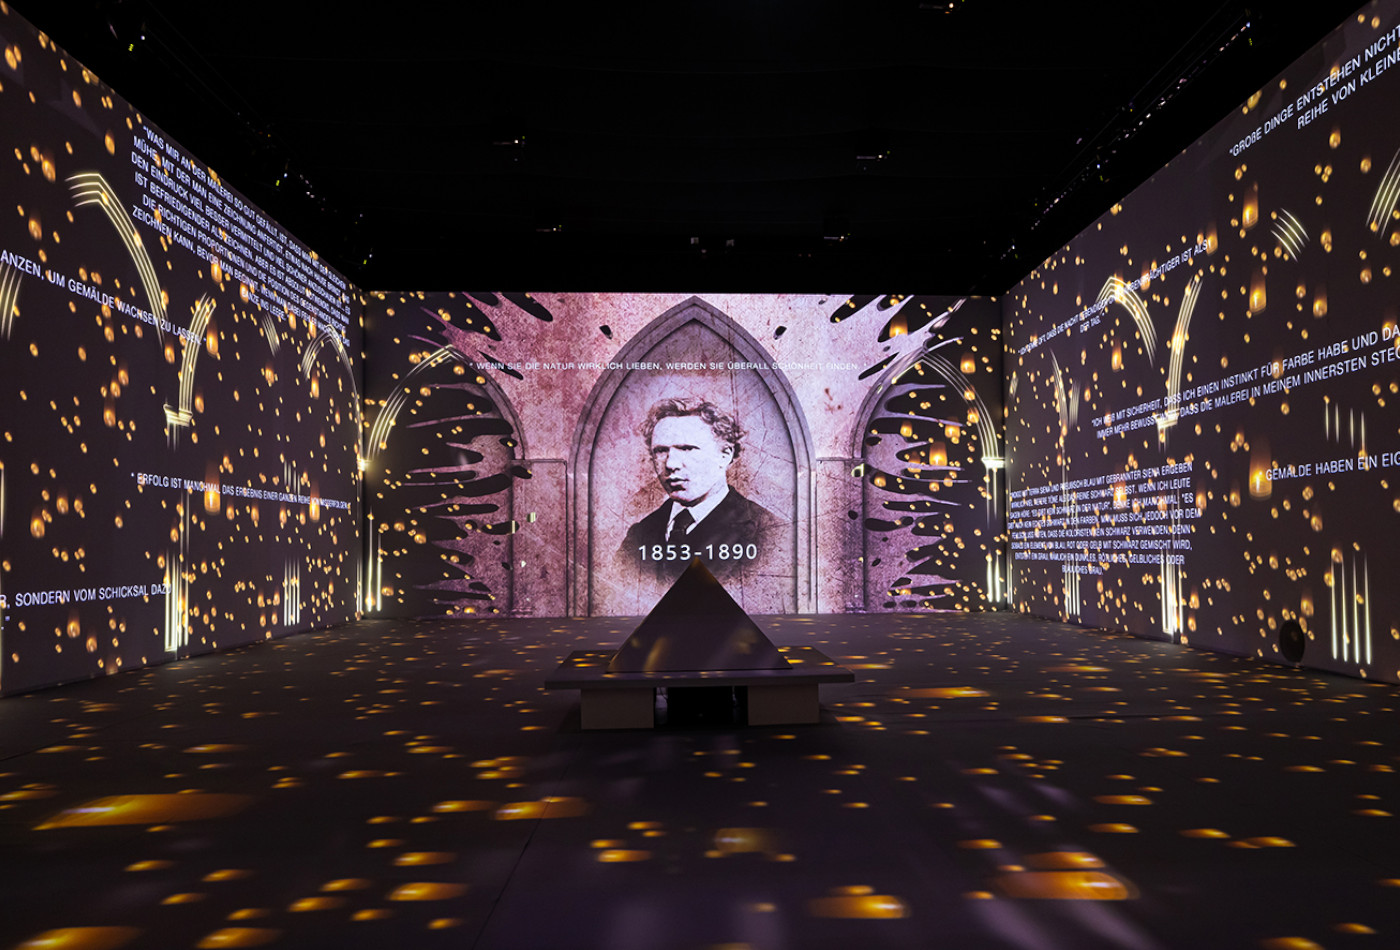 Innenaufnahme der immersiven Ausstellung "Van Gogh - The Immersive Experience"